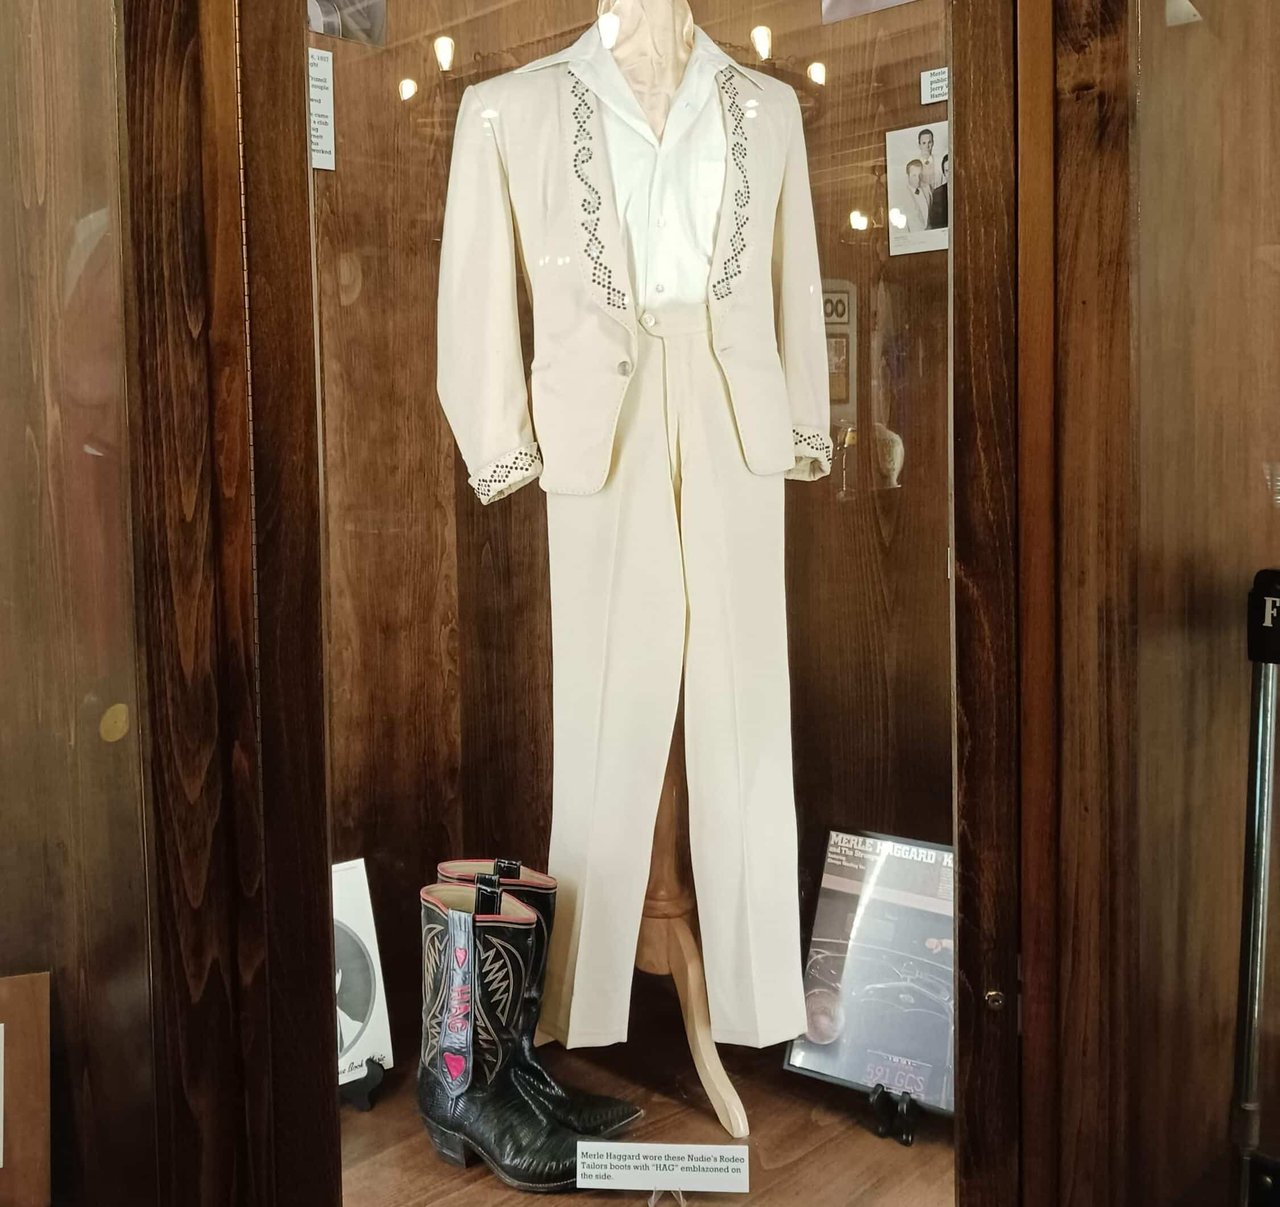 A decorative white suit with black cowboy boots.